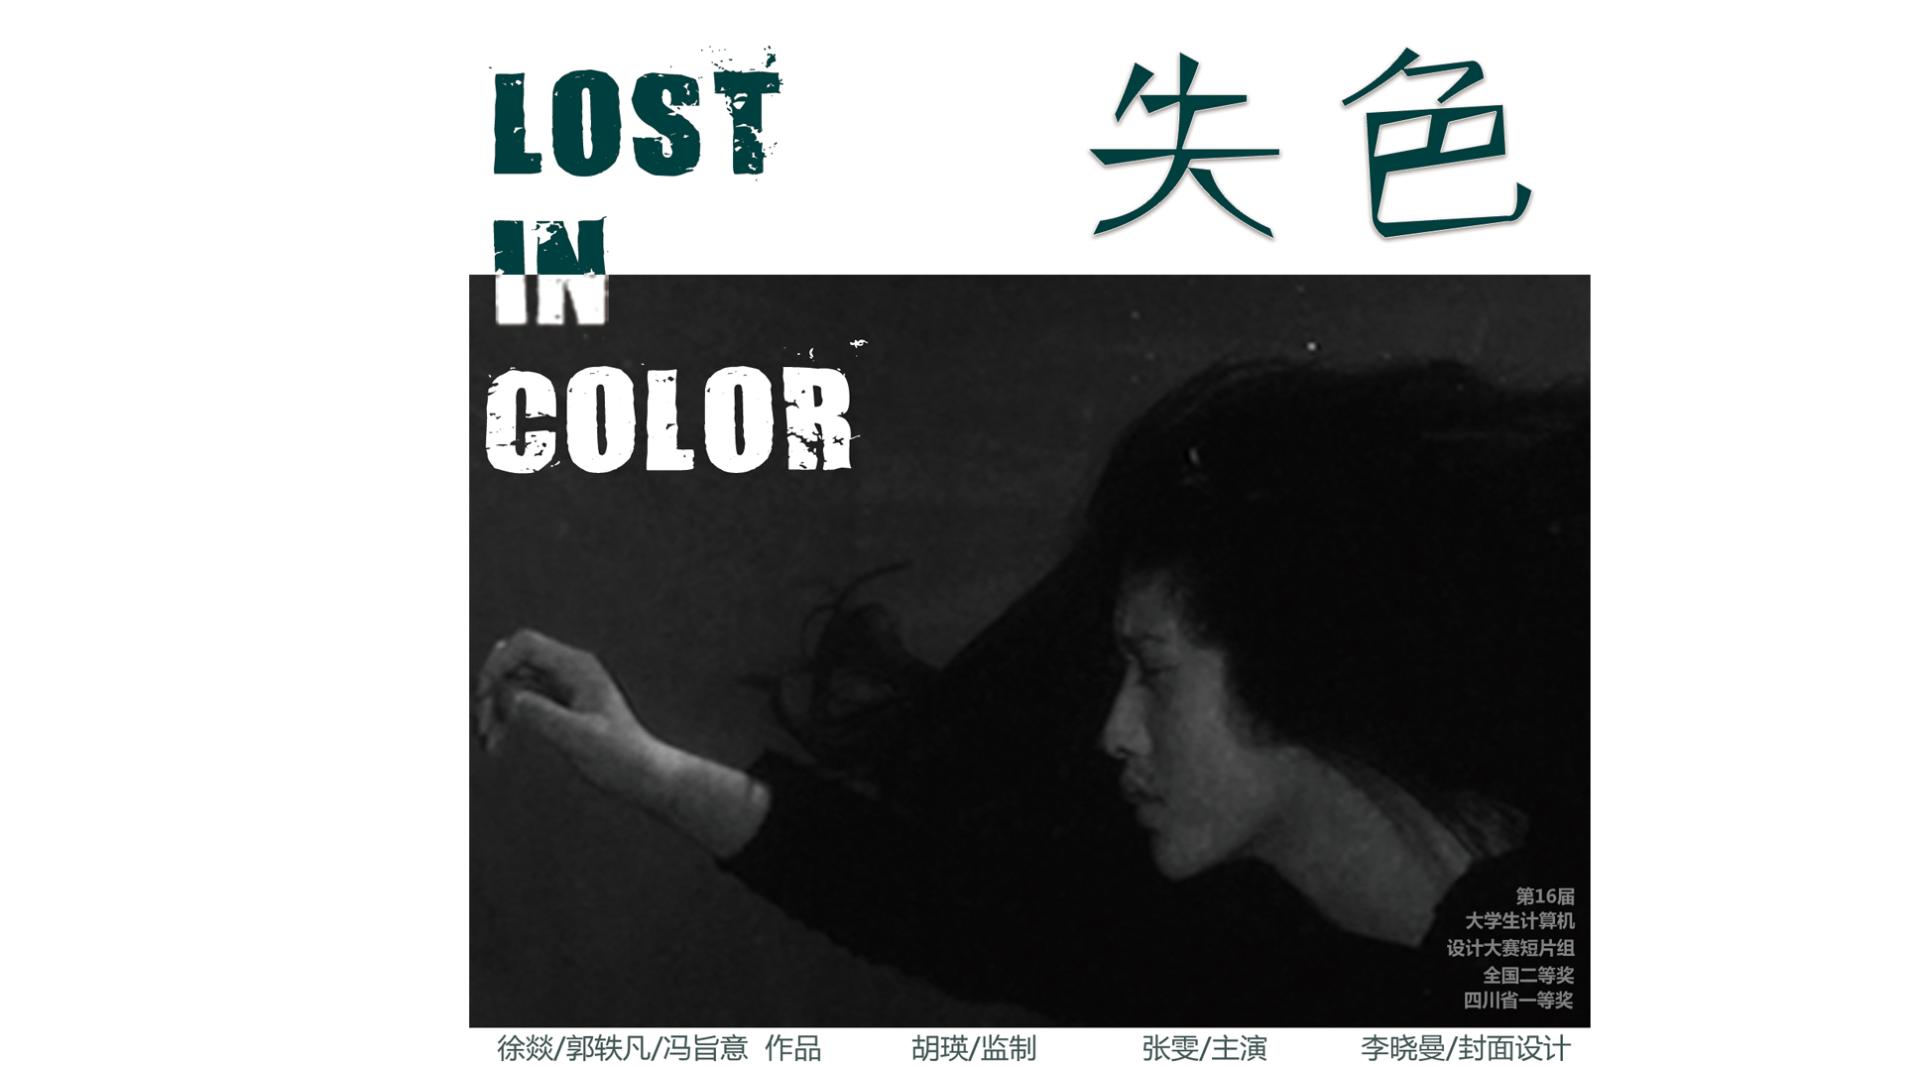 失色 Lose in color